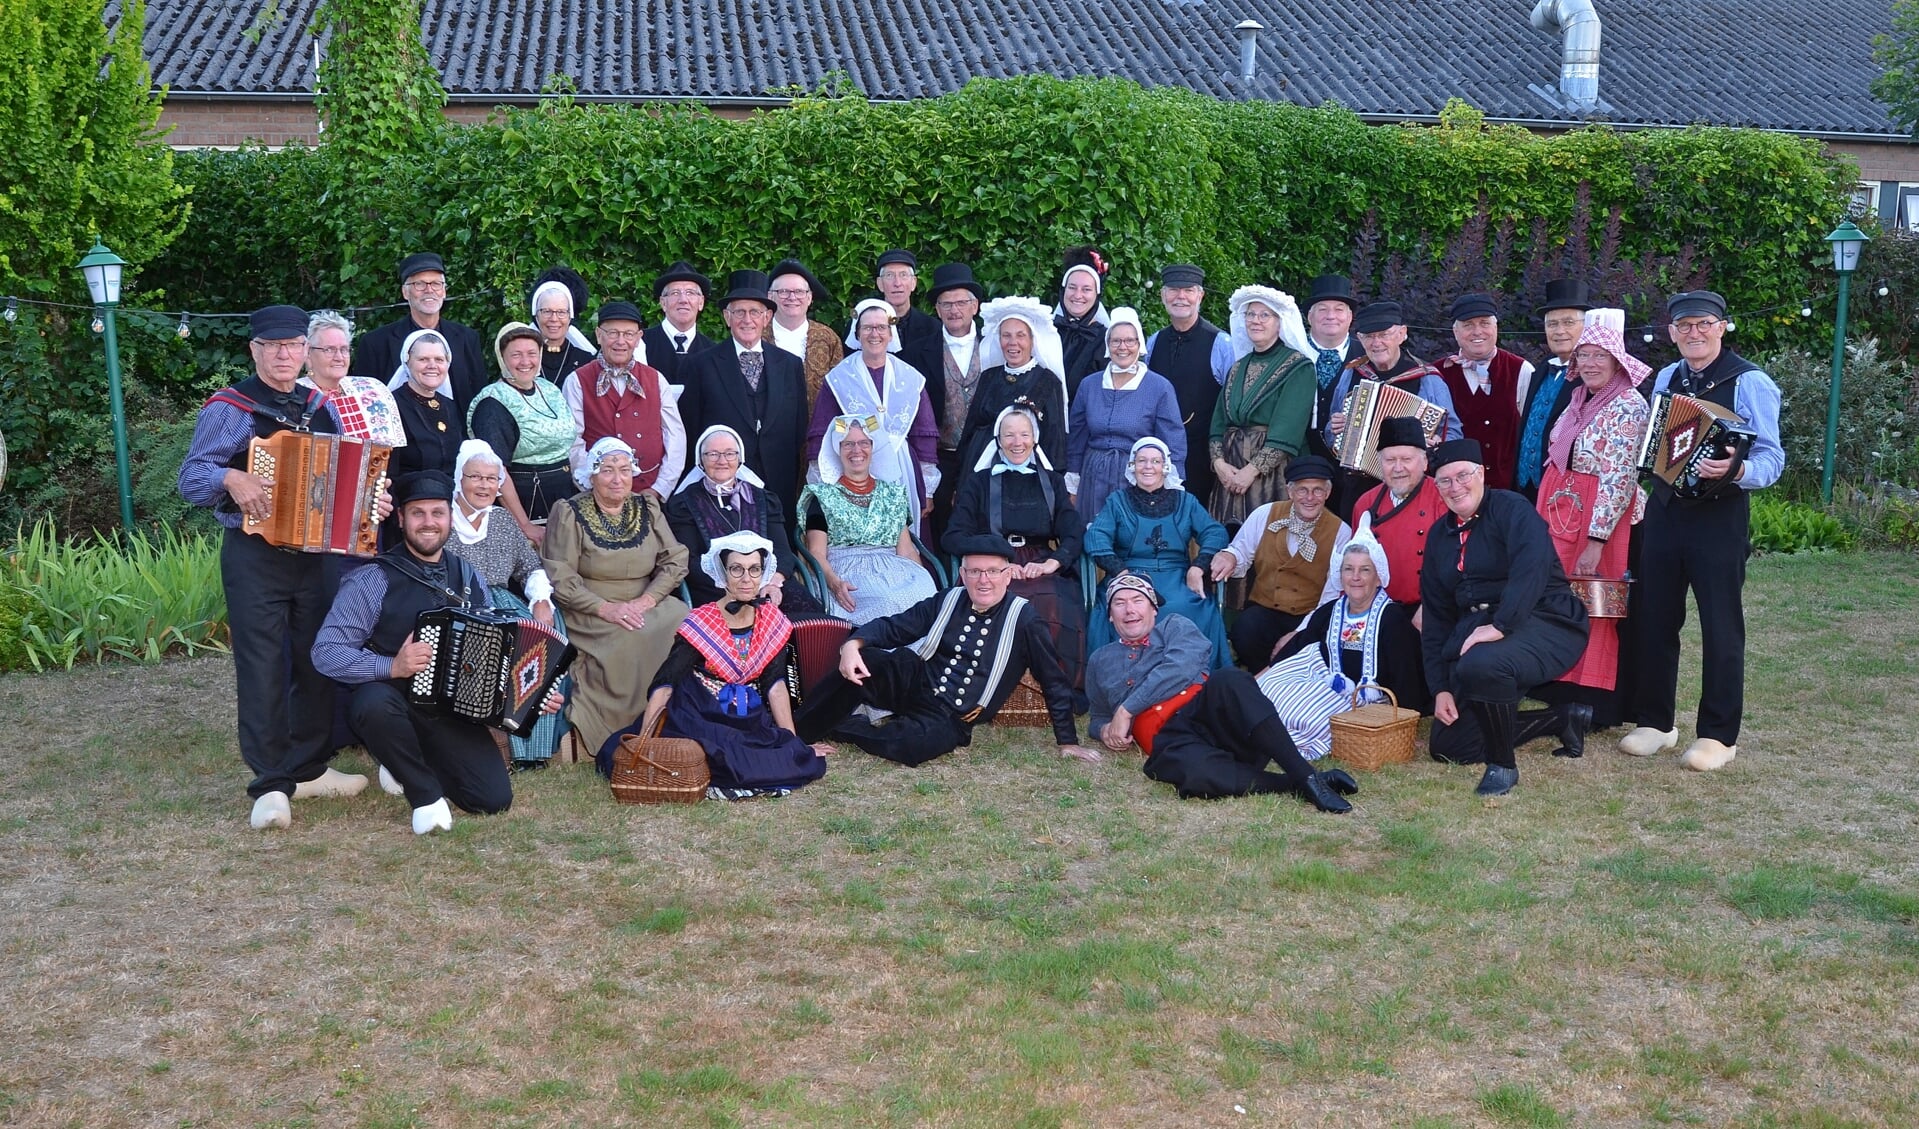 Folkloregroep Oost Nederland. Foto: Johan Braakman